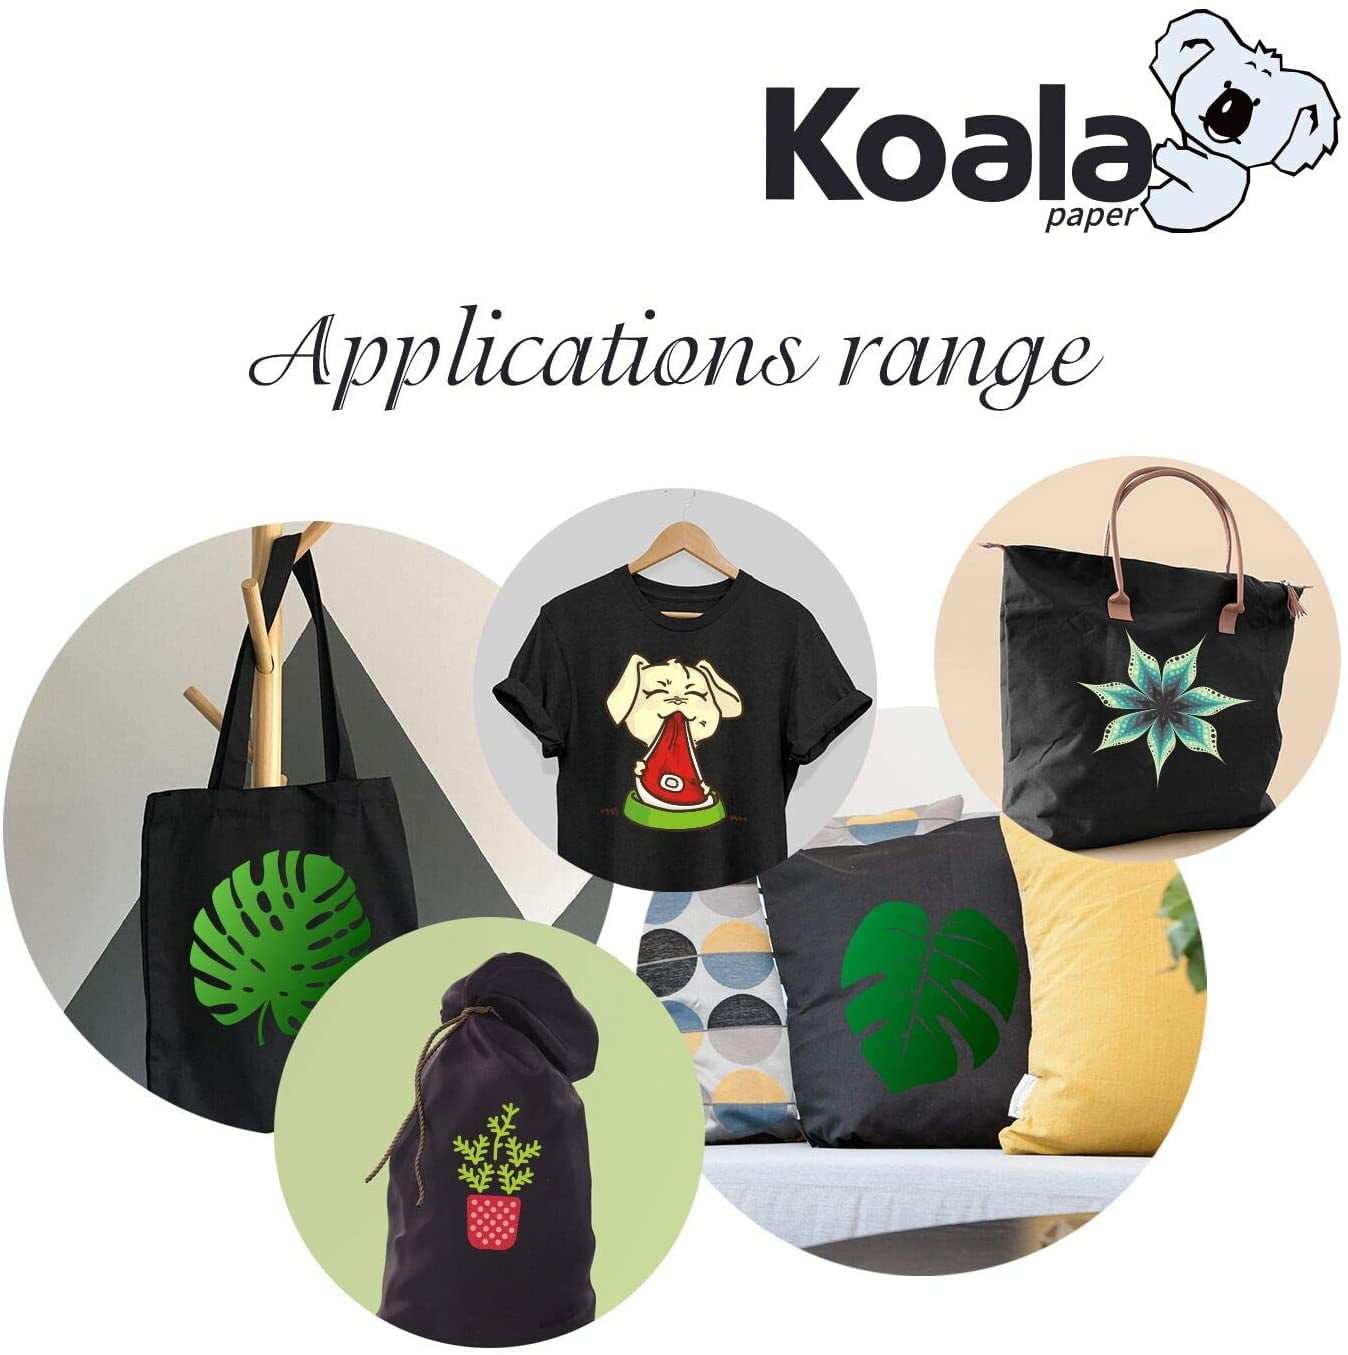 Koala Dark T Shirt Transfer Paper for Cotton Fabric 10 sheets/ 20 shee –  koalagp